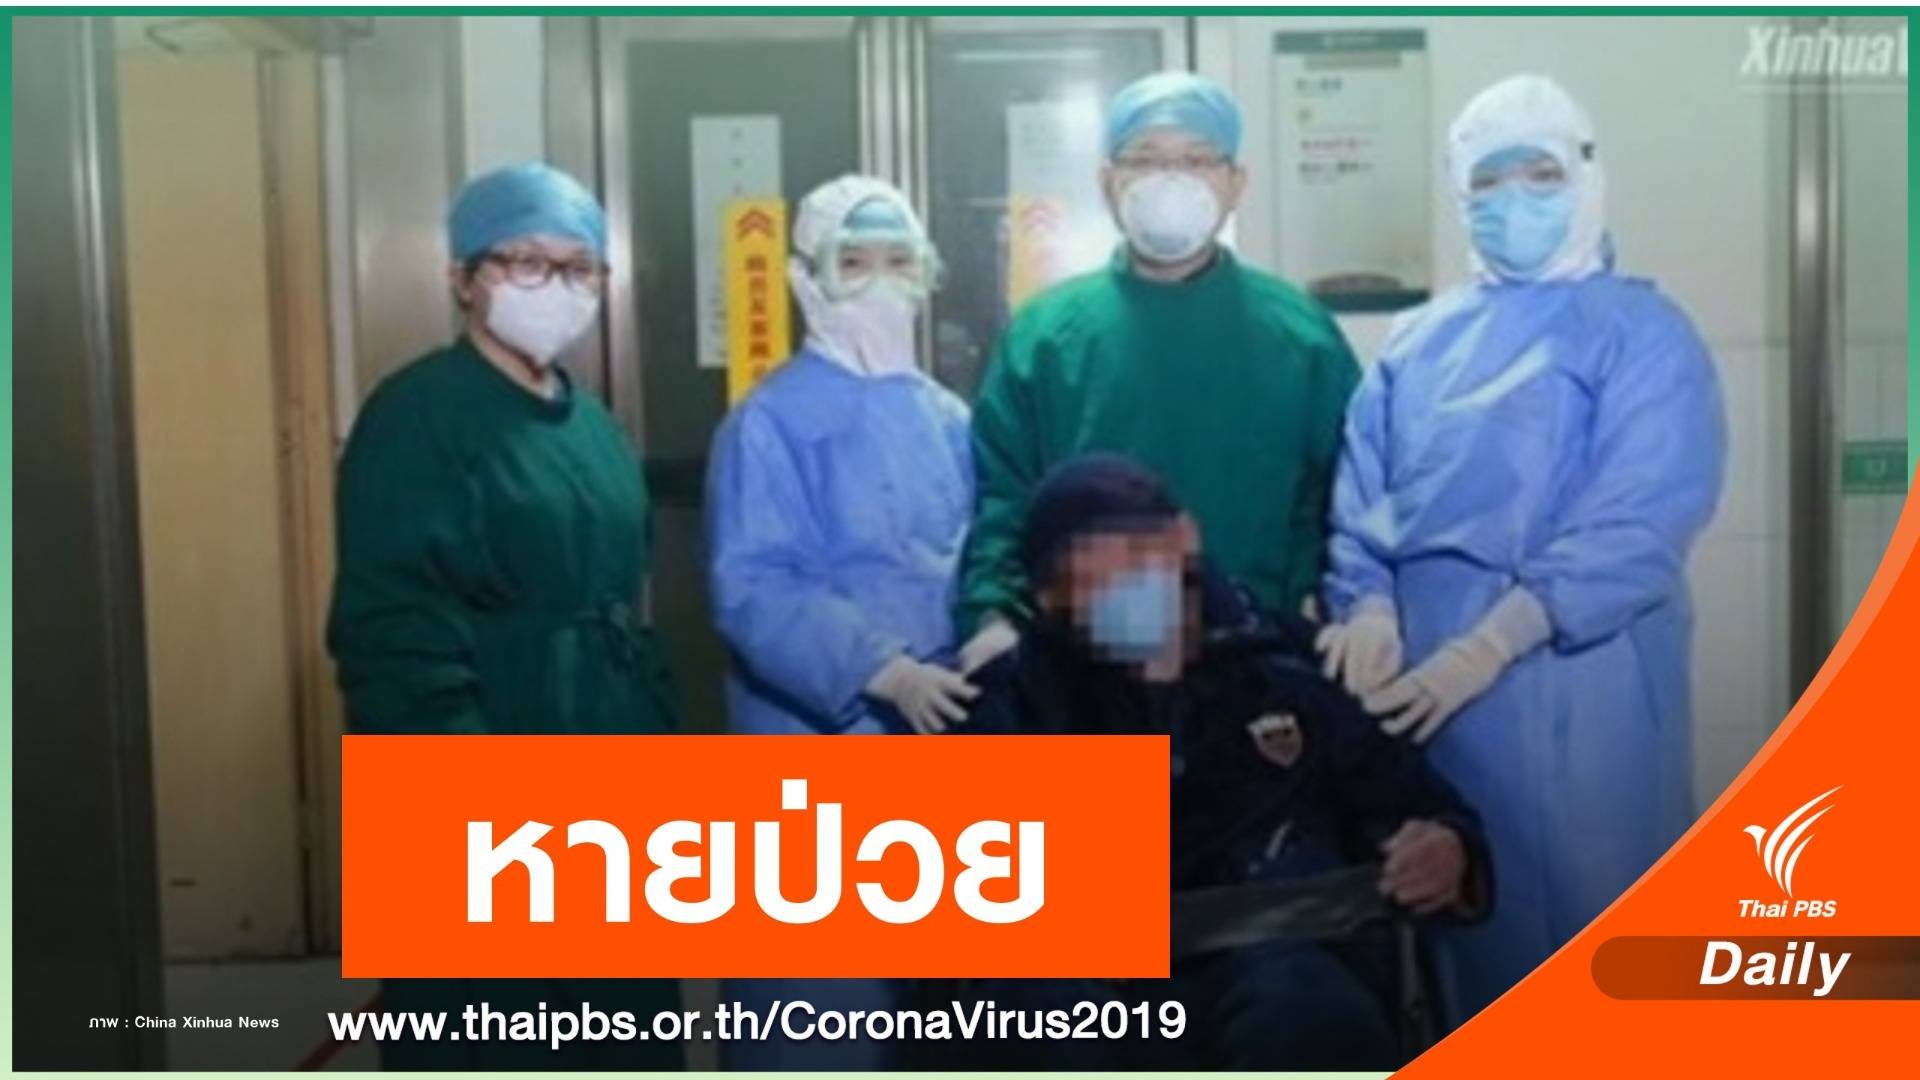 ข่าวดี! ผู้ป่วย COVID-19 อายุมากสุดในจีนหายป่วยแล้ว 